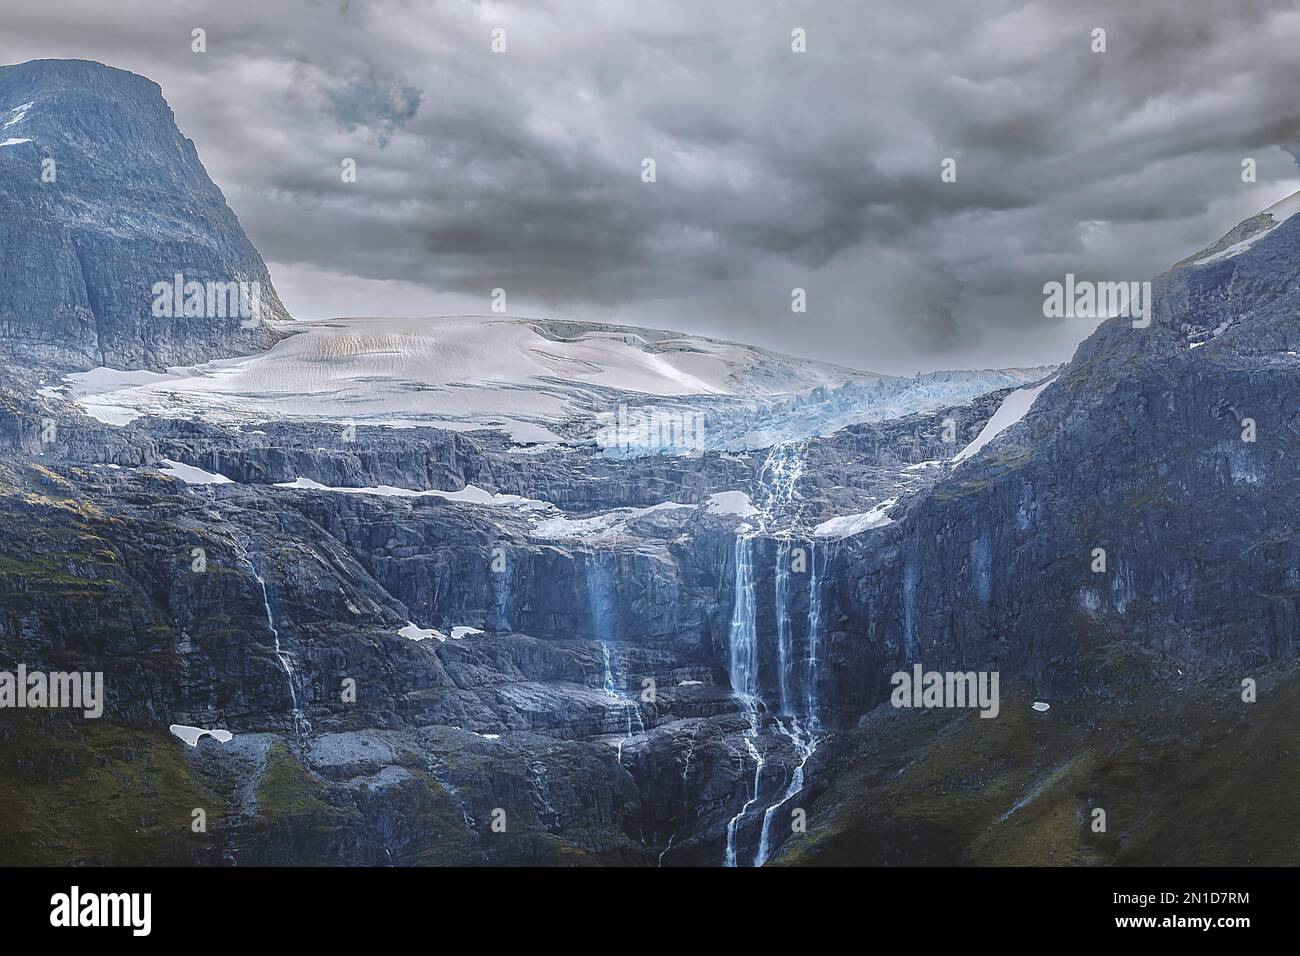 MGL0551 Das Wasser von einem schmelzendem Gletscher in Norwegen läuft an den Felswänden herab Stock Photo